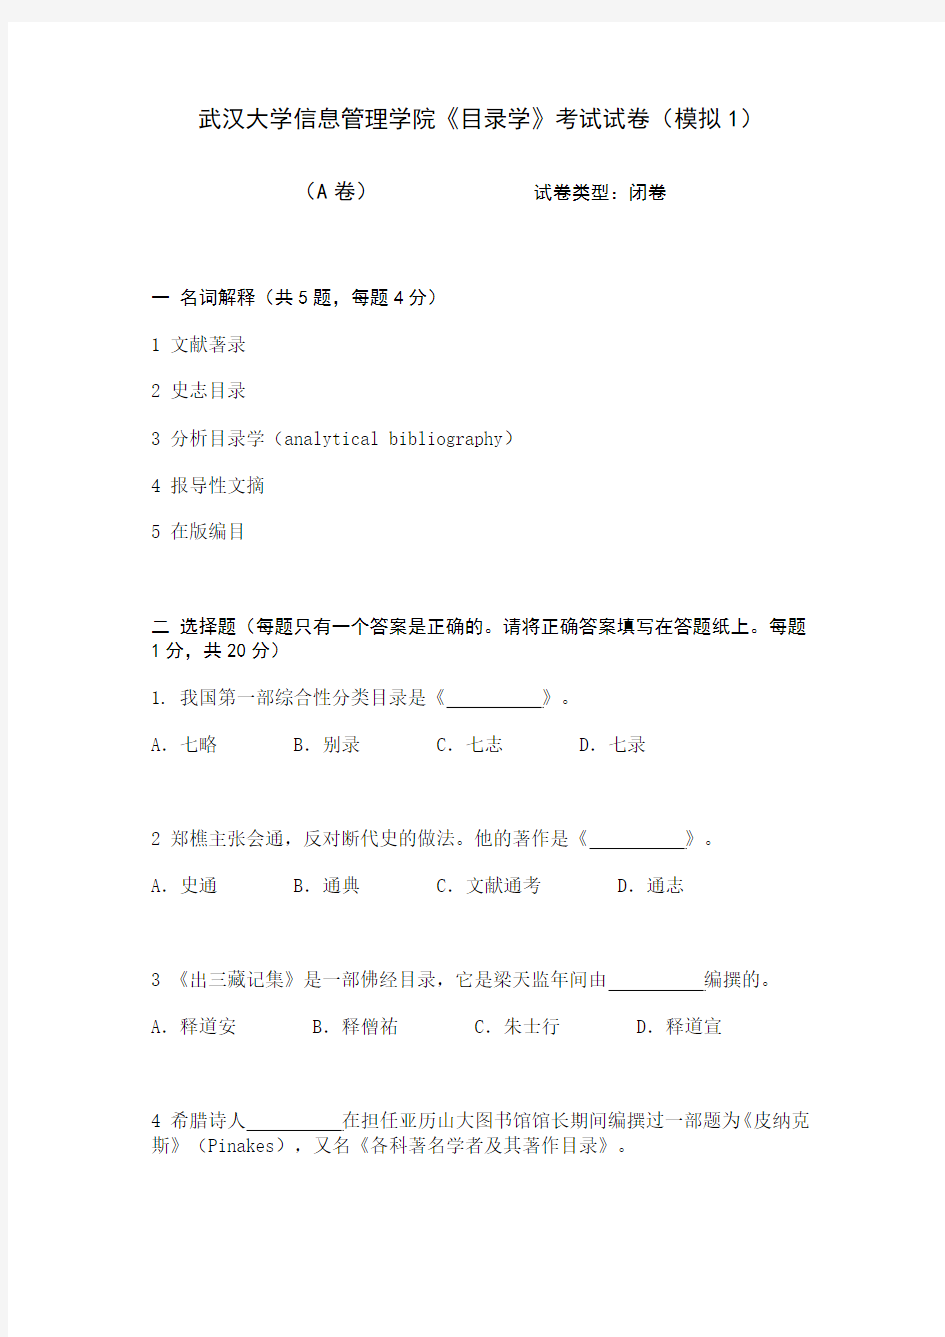 武汉大学信息管理学院《目录学》考试试卷(模拟1)